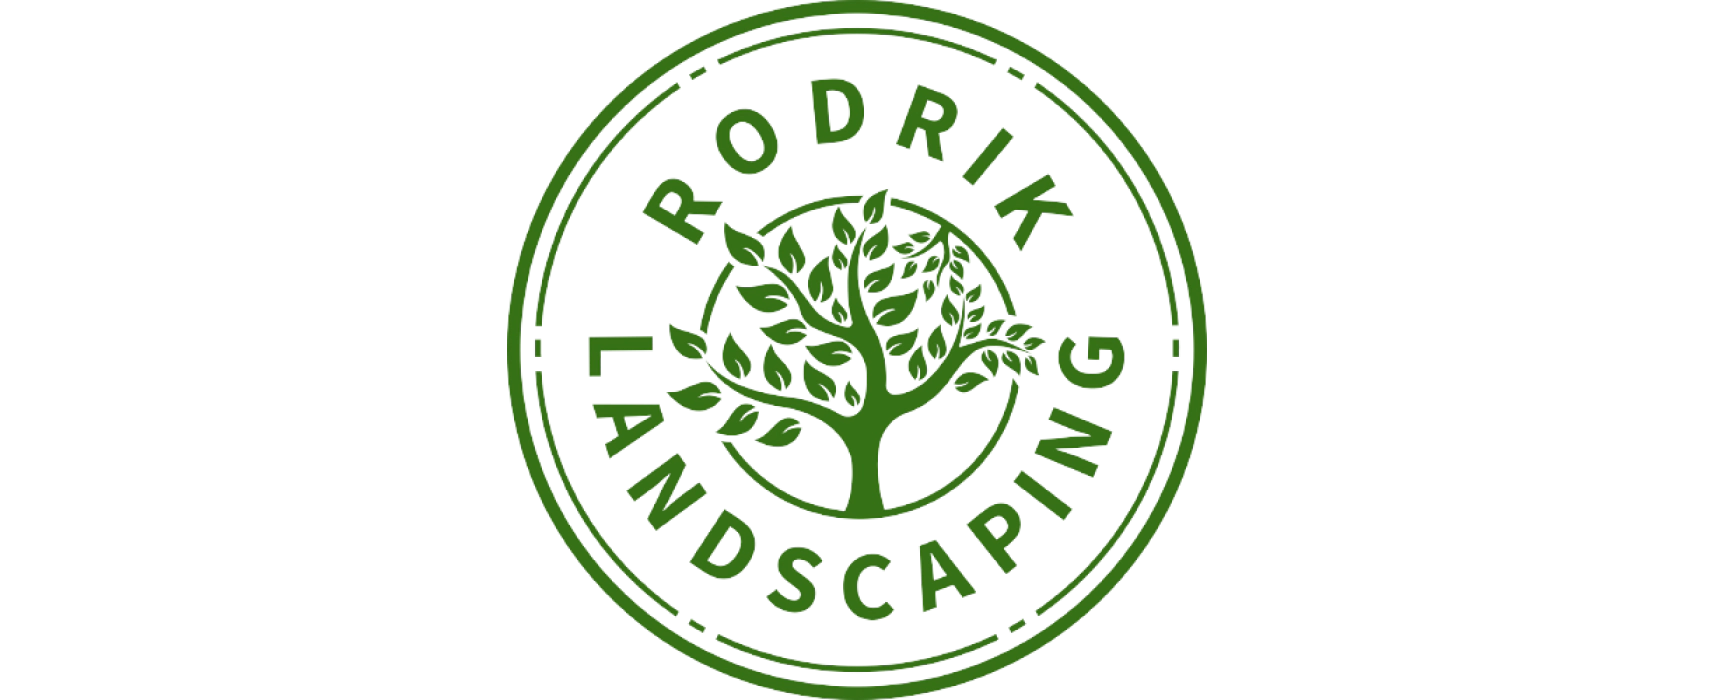 Rodrik Landscaping widget